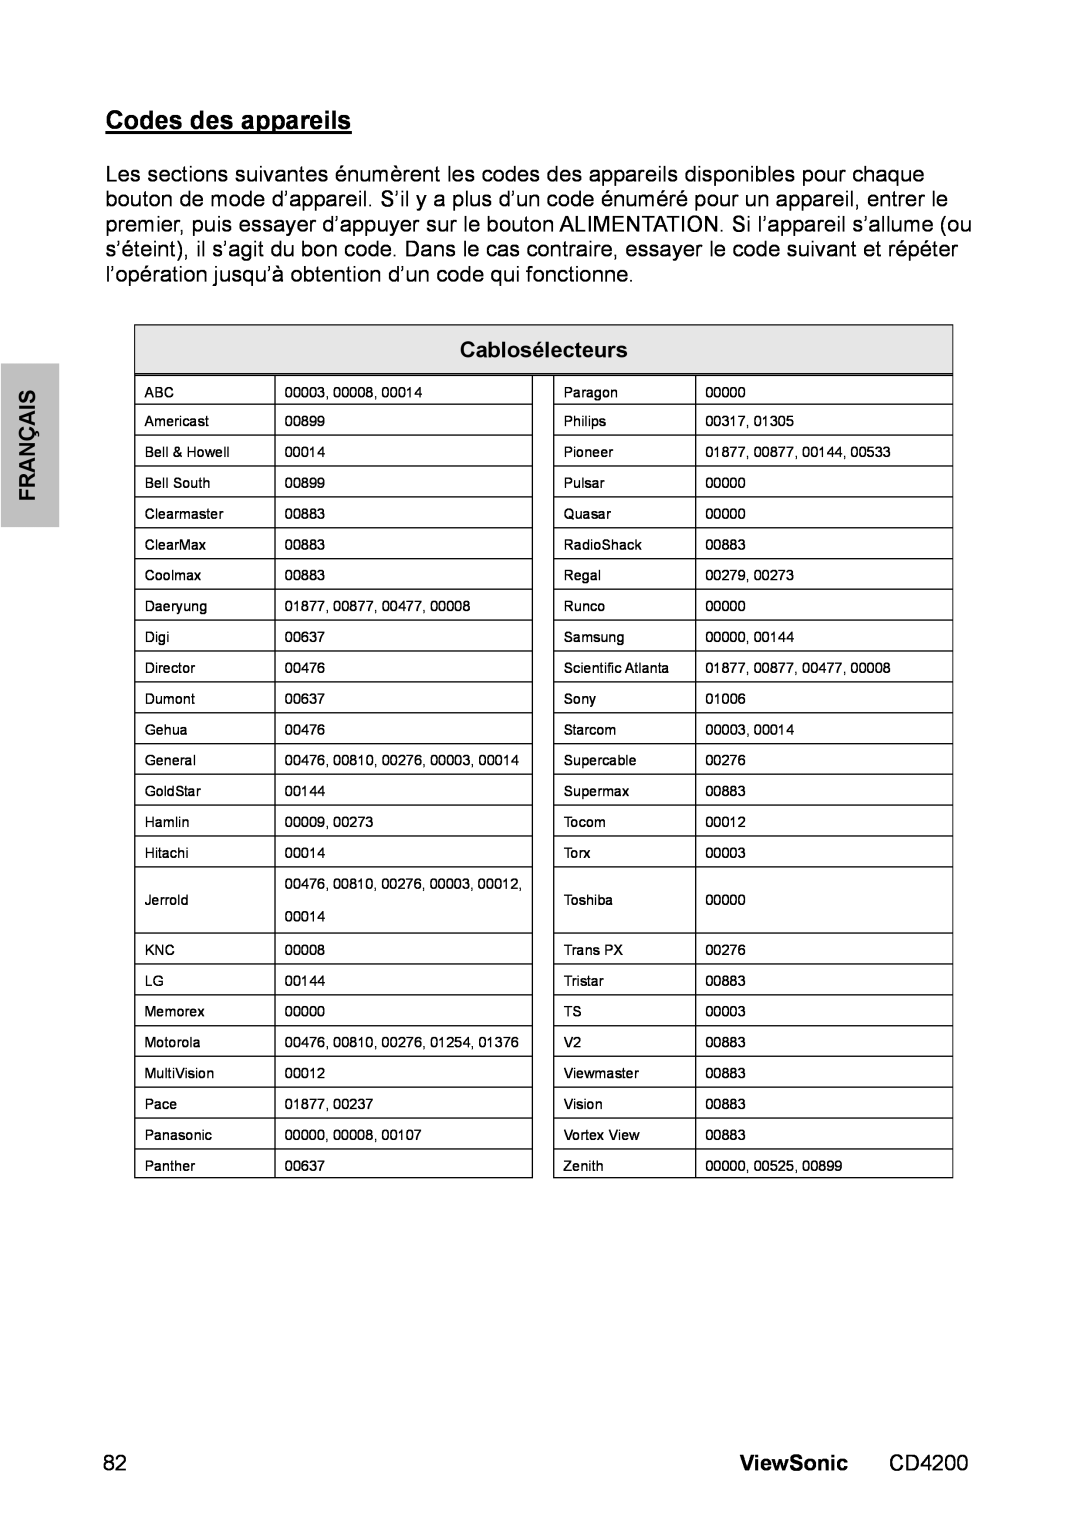 ViewSonic CD4200 manual Codes des appareils, Cablosélecteurs, Français, ViewSonic 